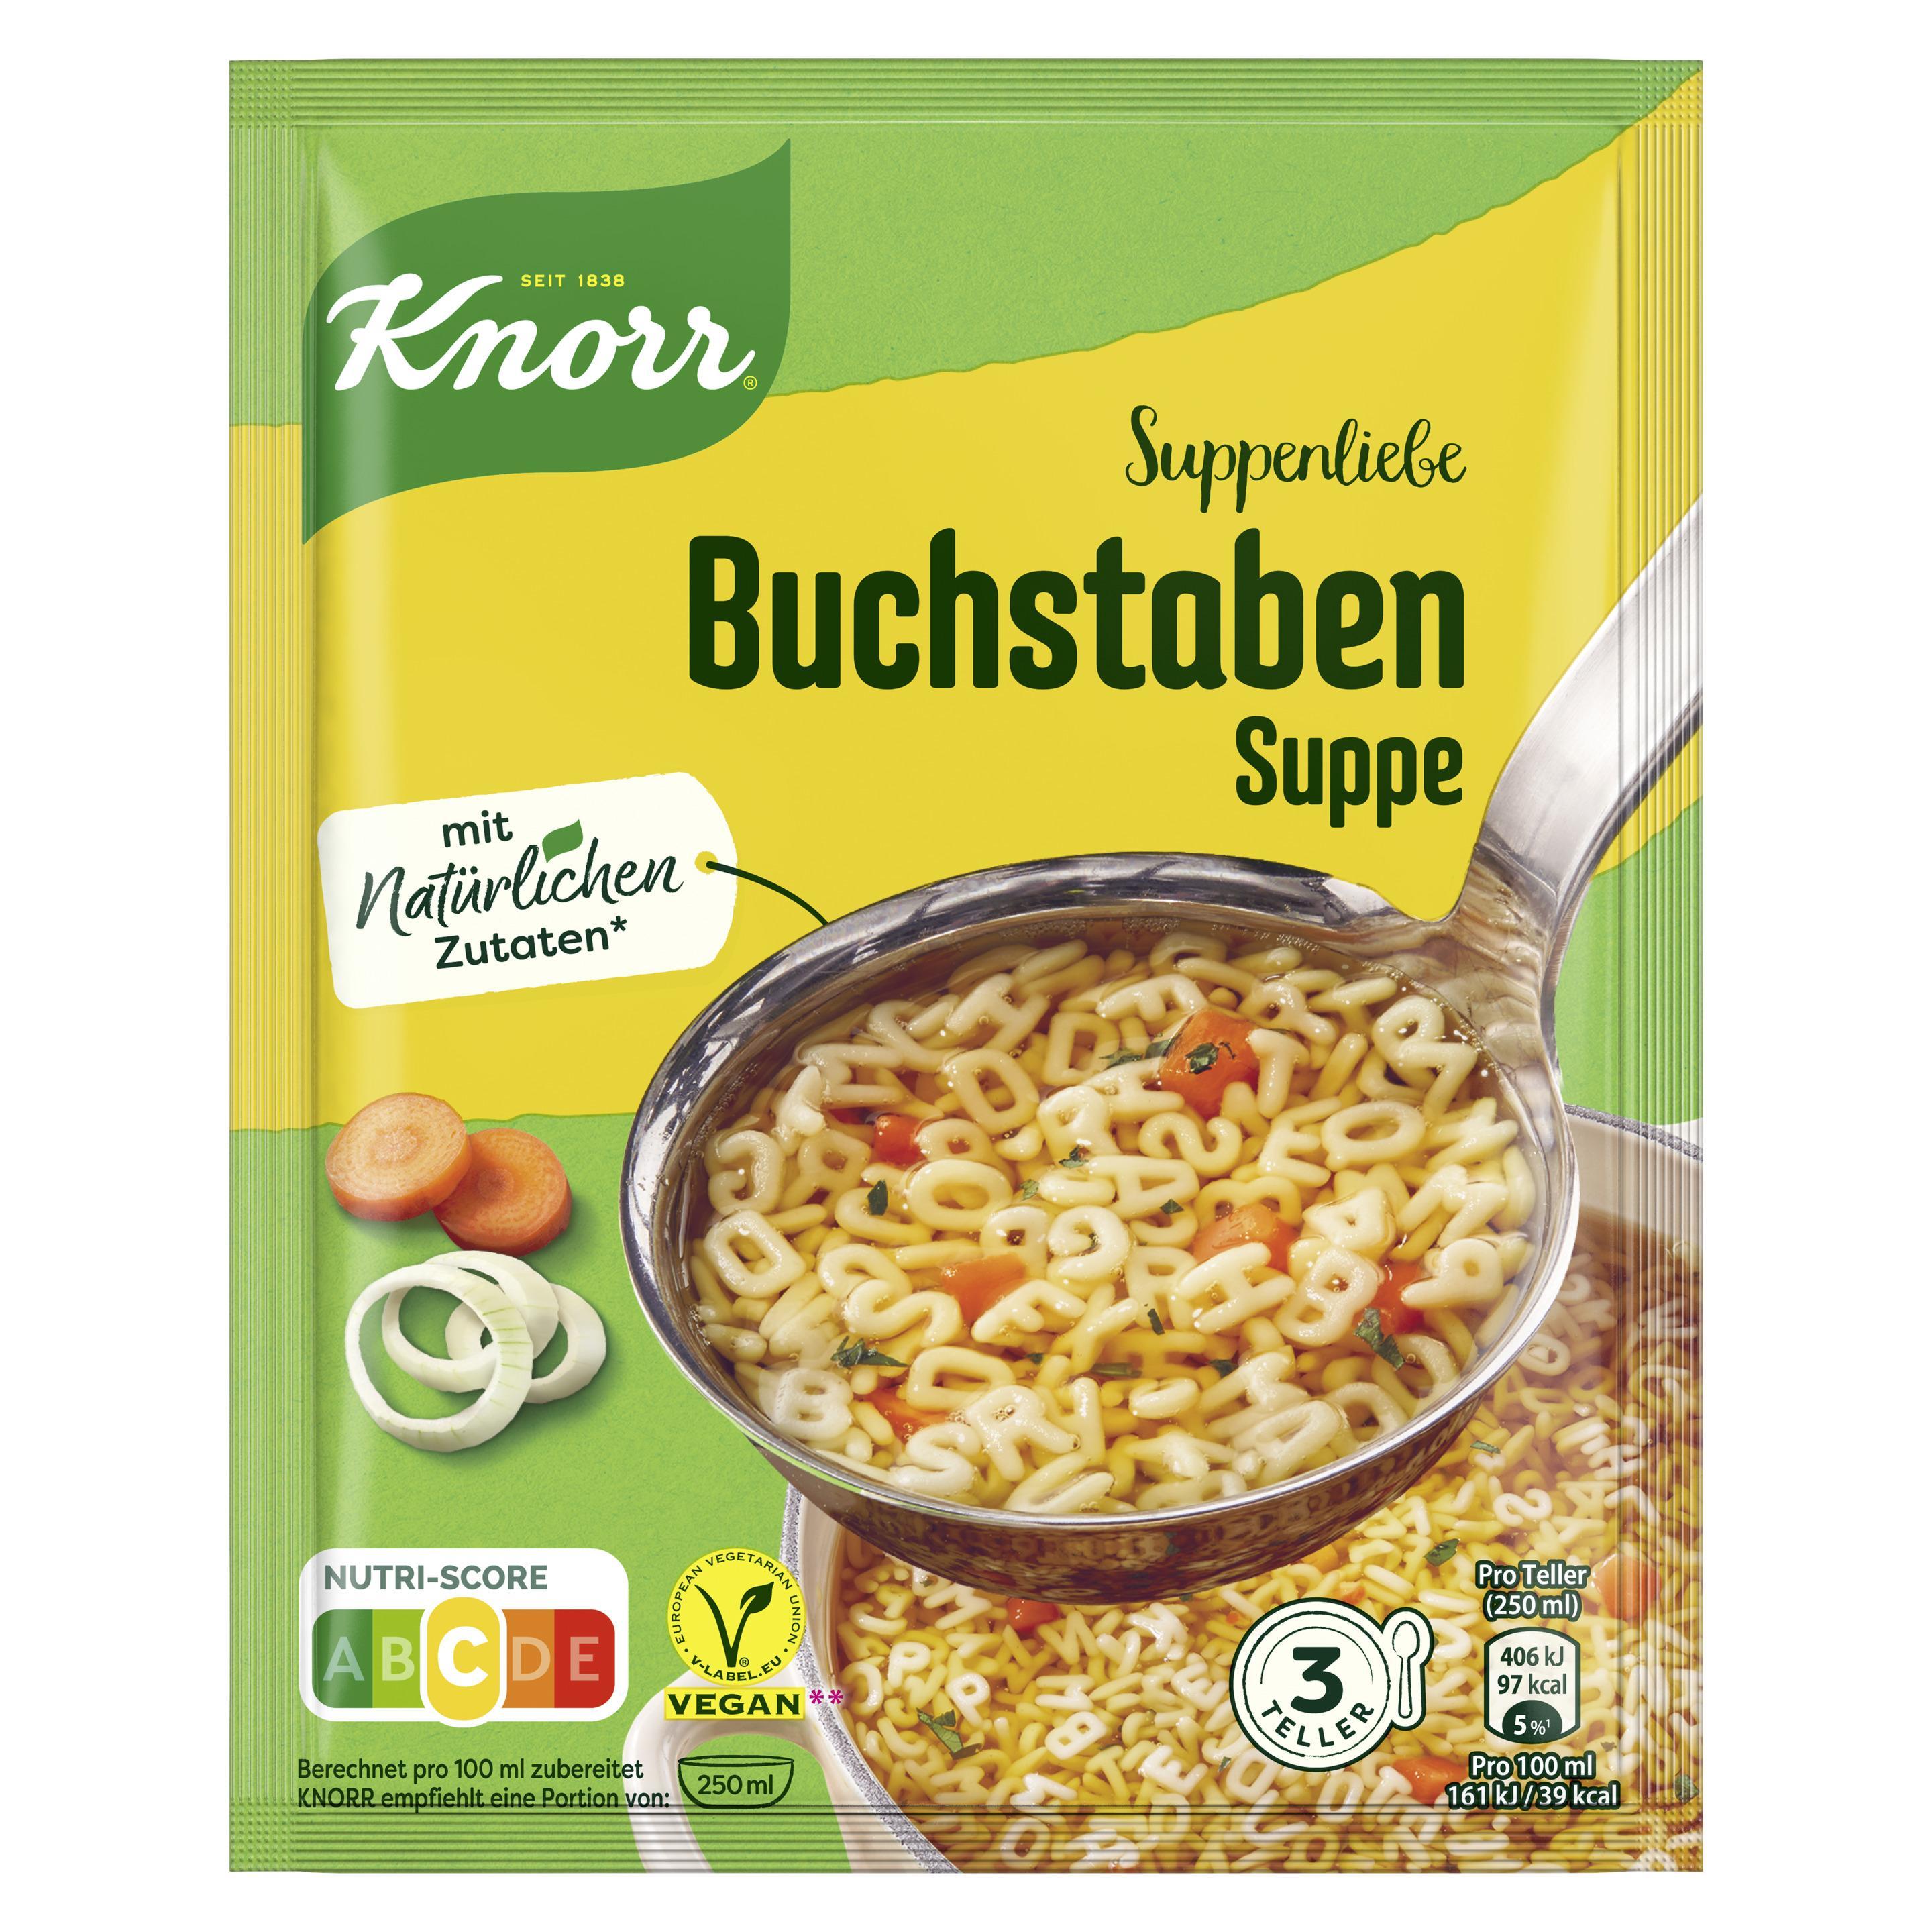 Knorr Suppenliebe Buchstaben Suppe 750ml Beutel